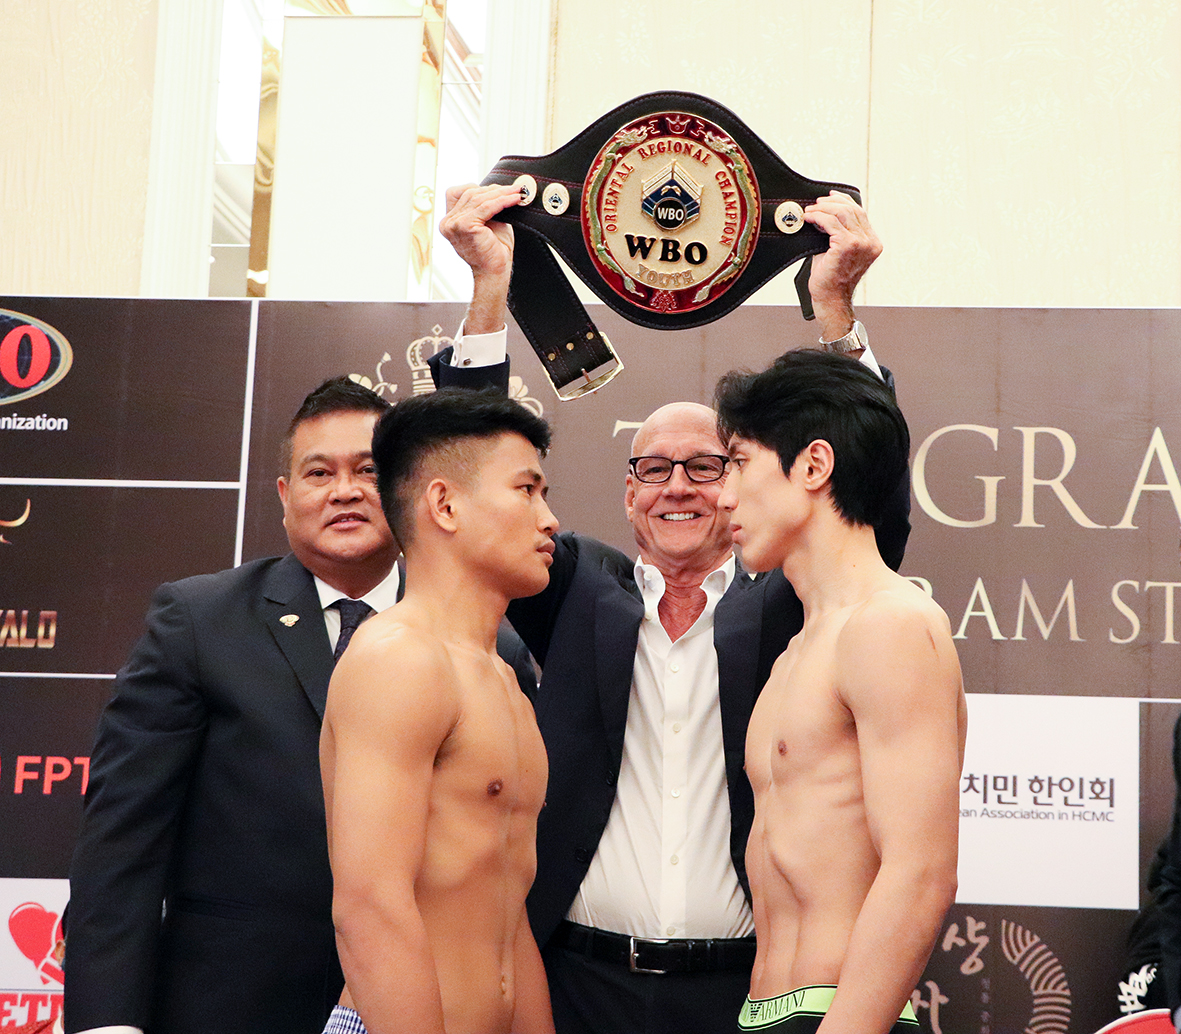 Màn so găng giữa Song Chan-ho người Hàn Quốc (bên phải) và Romer Pinili, người Philippines tranh đai vô địch trẻ WBO cũng là một trong những trận đấu đáng chú ý tại sự kiện Quyền Anh lần này.